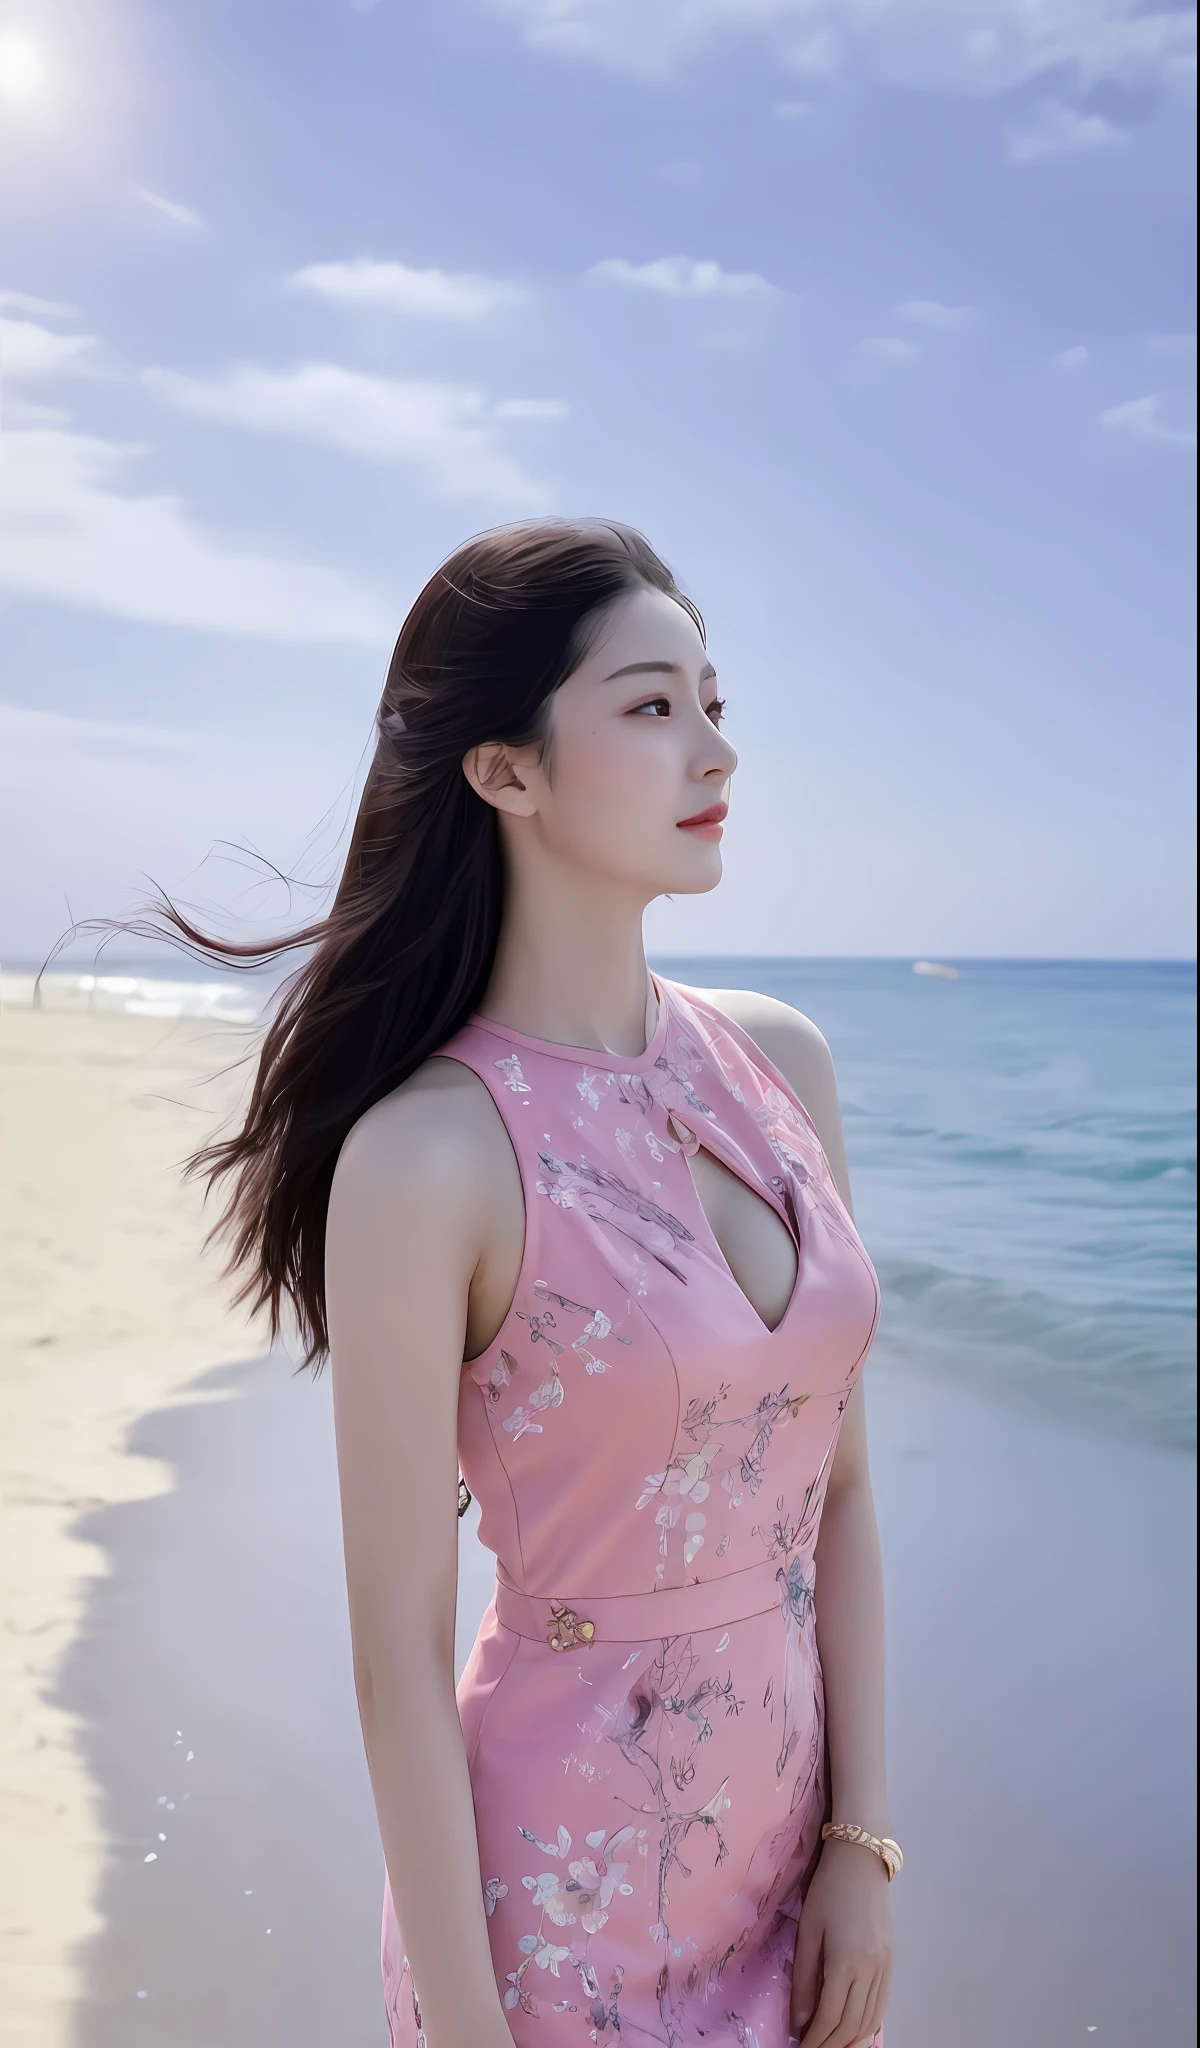 (шедевр), (Лучшее качество), (подробный), 1 девочка, 22 года, игривое выражение лица, большая грудь, длинные волосы, красивый, естественный, незащищенный, Алафидская женщина в розовом платье стоит на пляже, Шаси, морская королева Му Яньлин, Ruan Jia красивый! , фото на обложке портрет Ду Цзюань, Ли Цзысинь, Вдохновленный Тан Ифэнь, Чэнь Синьтун, Е Вэньфэй, вдохновленный Се Суном, Мэй Цин, вдохновленный Чэн Цзясуй, вдохновленный Ма Юаньюй